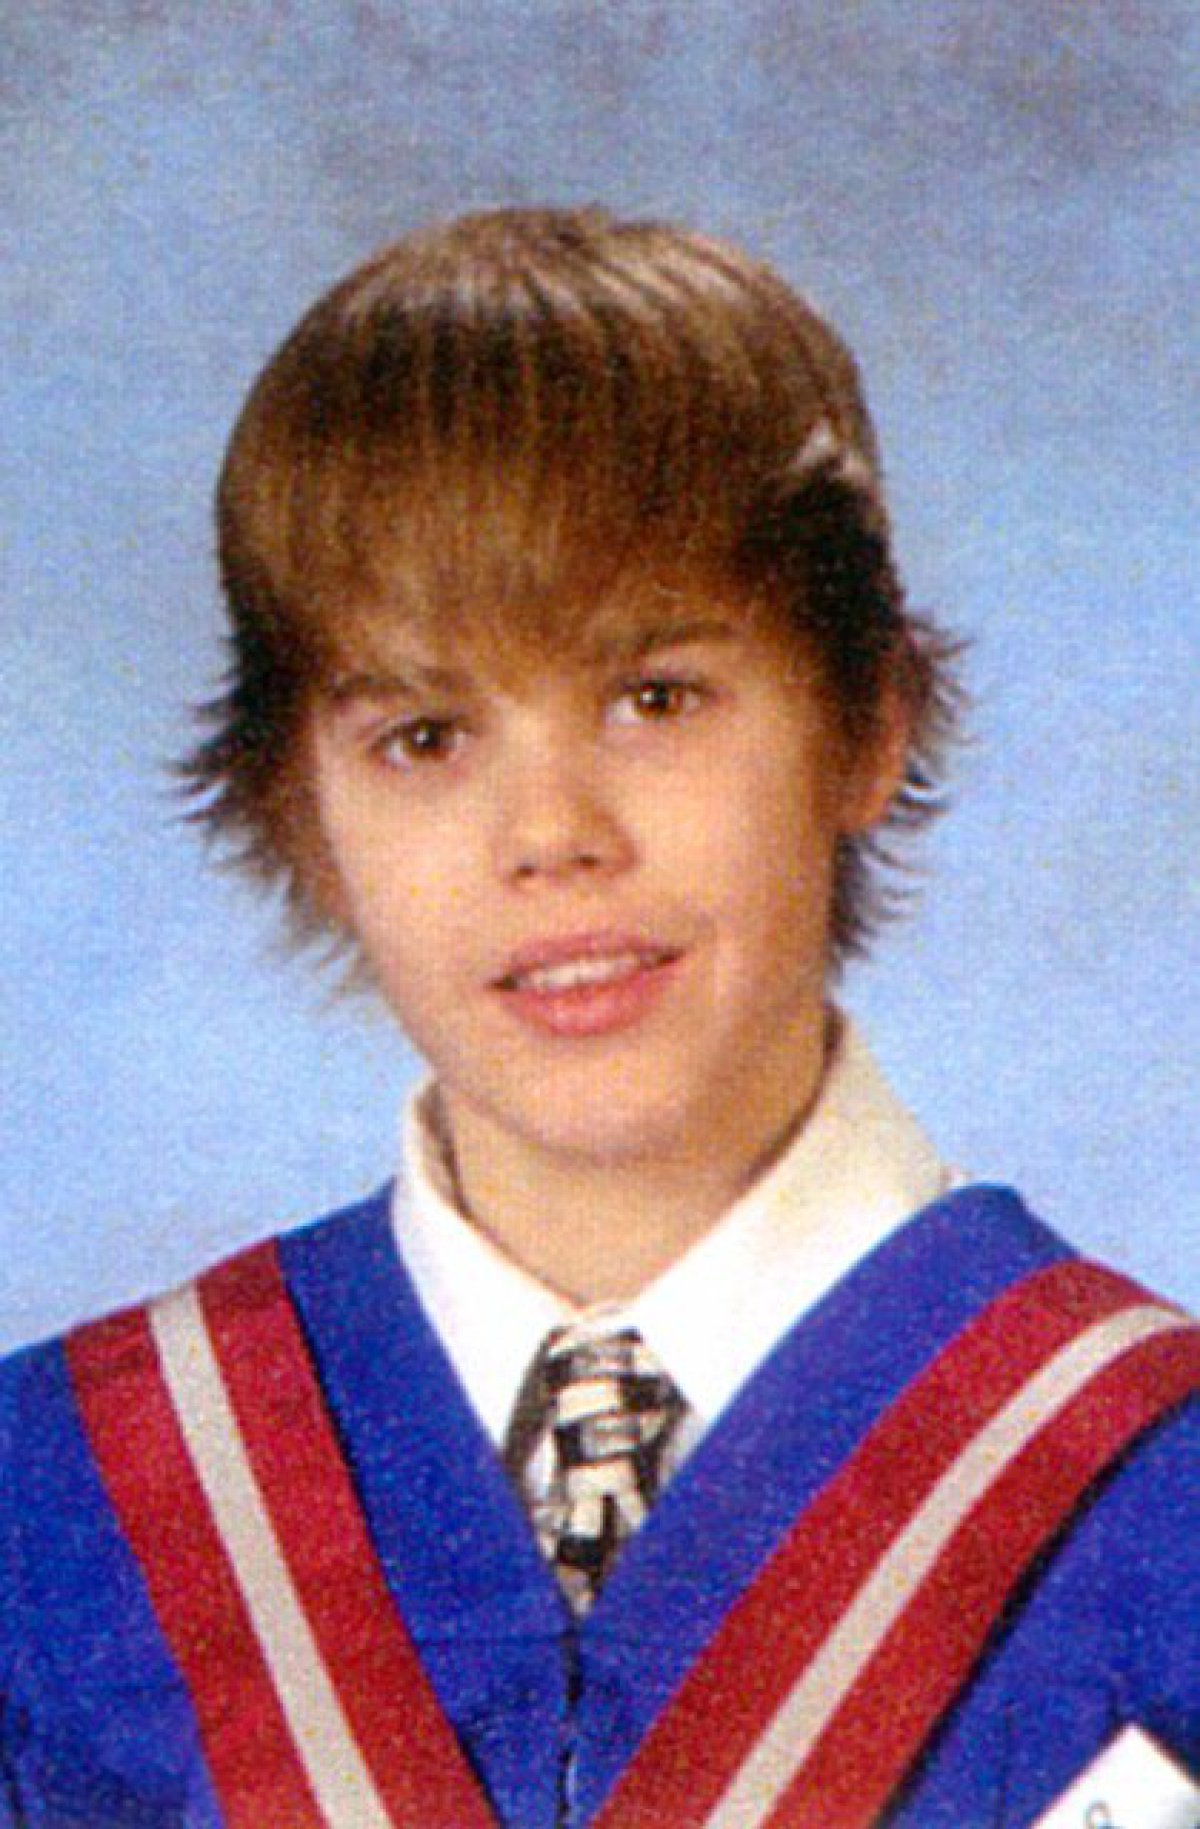 Increíble, Justin Bieber parece un nene bueno en esta foto!